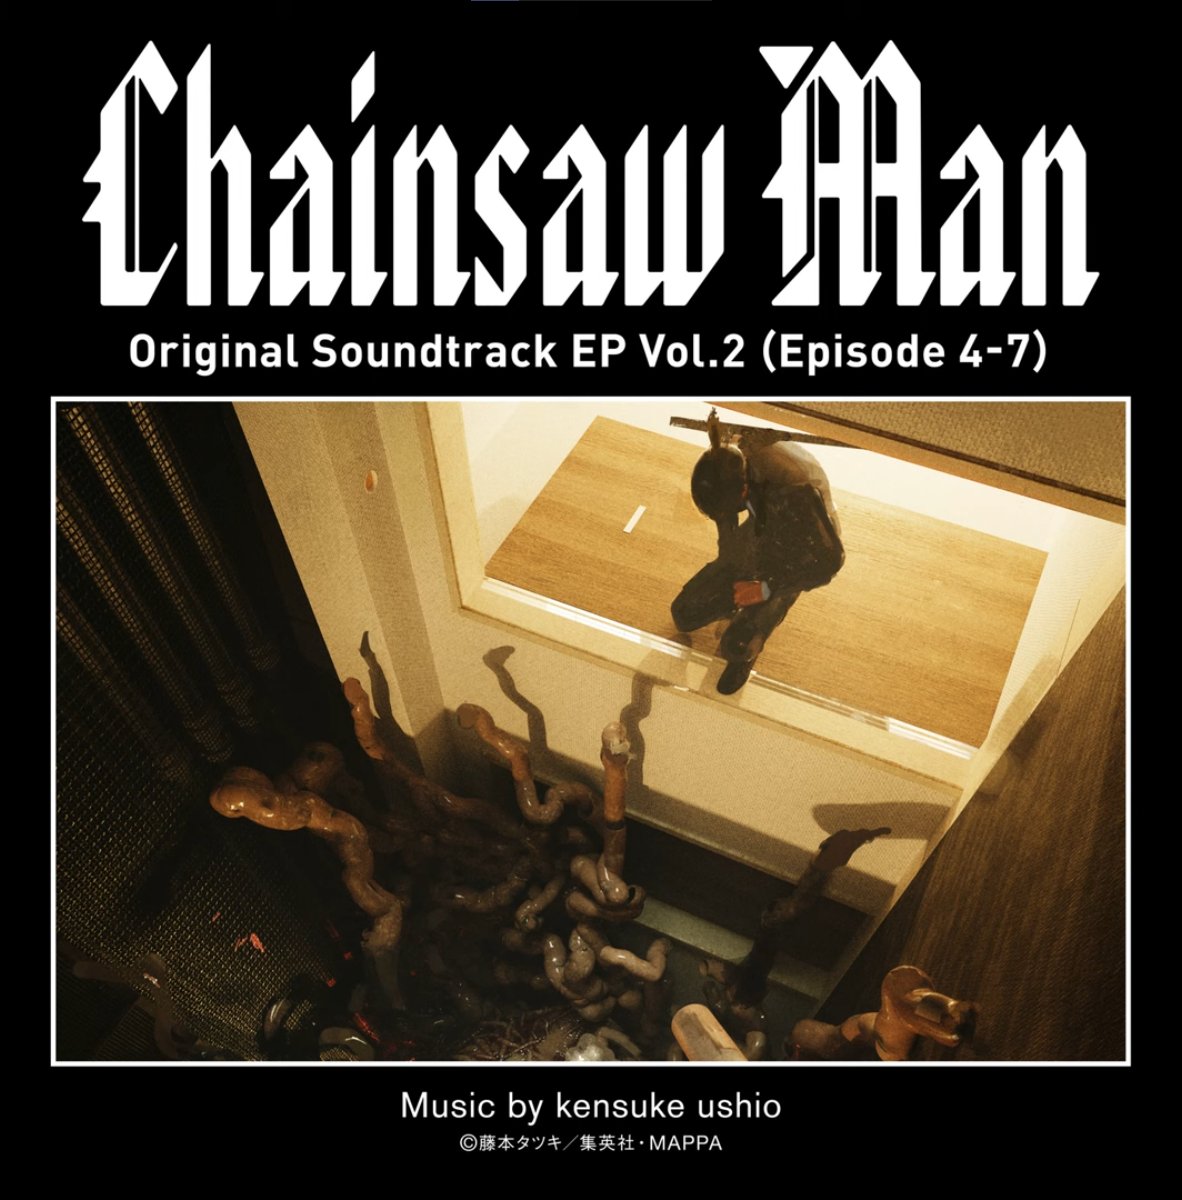 Análise do episódio 7 de Chainsaw man 